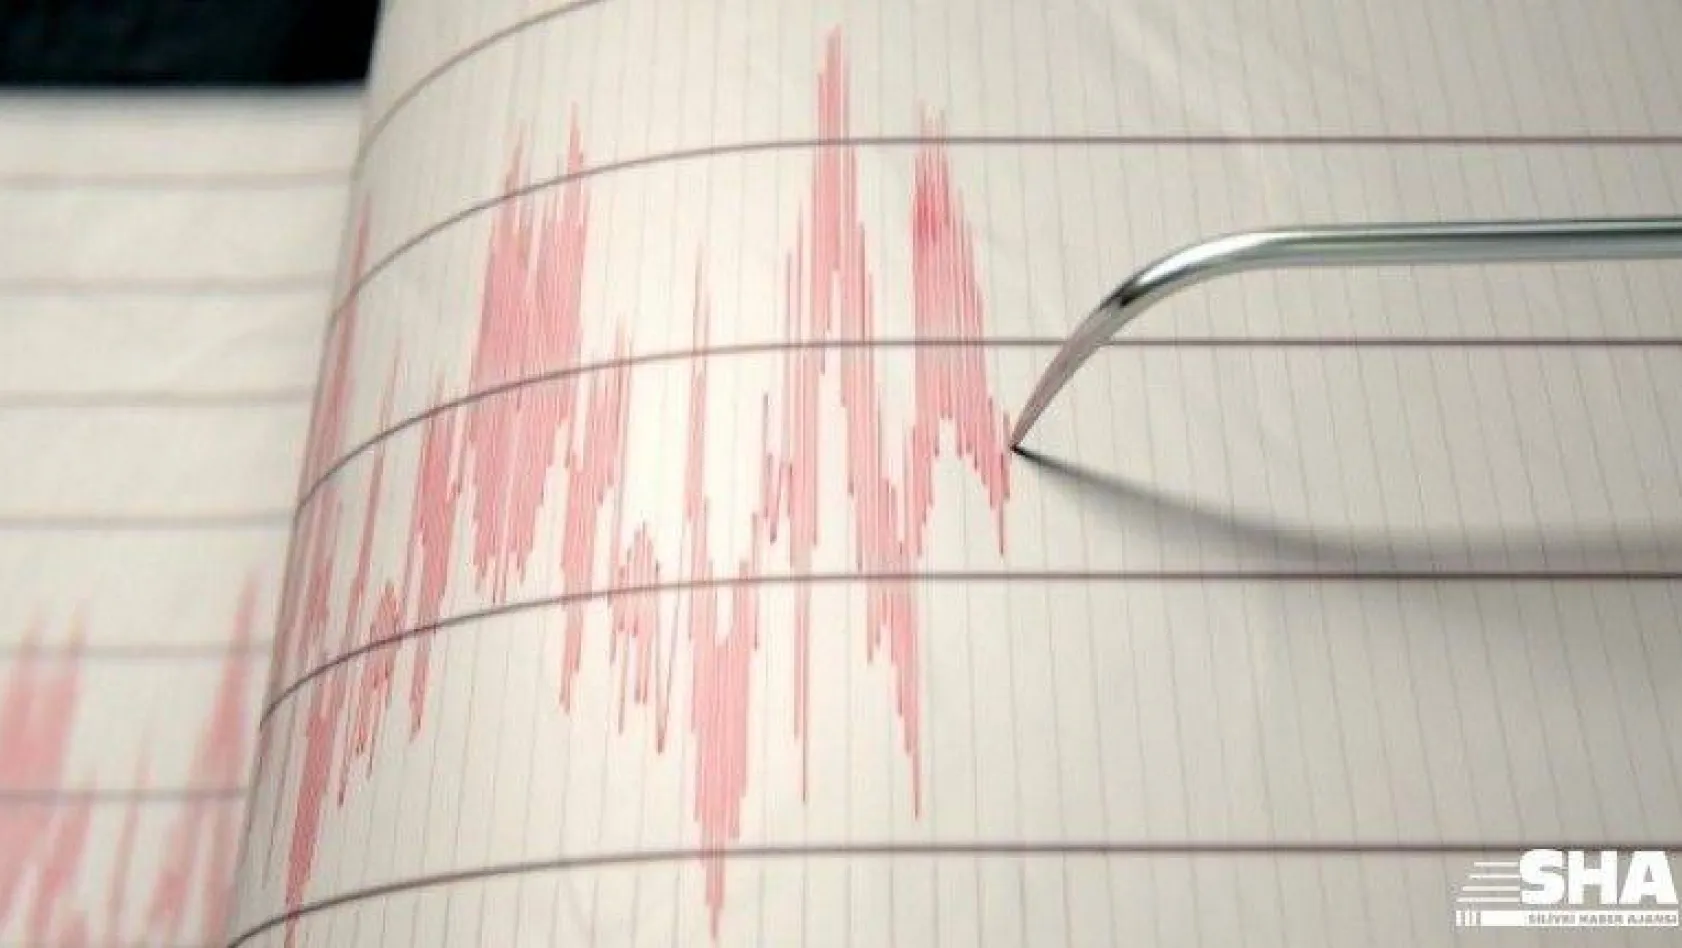 Son Depremler: Marmara Denizi'nde 3.2 büyüklüğünde deprem meydana geldi